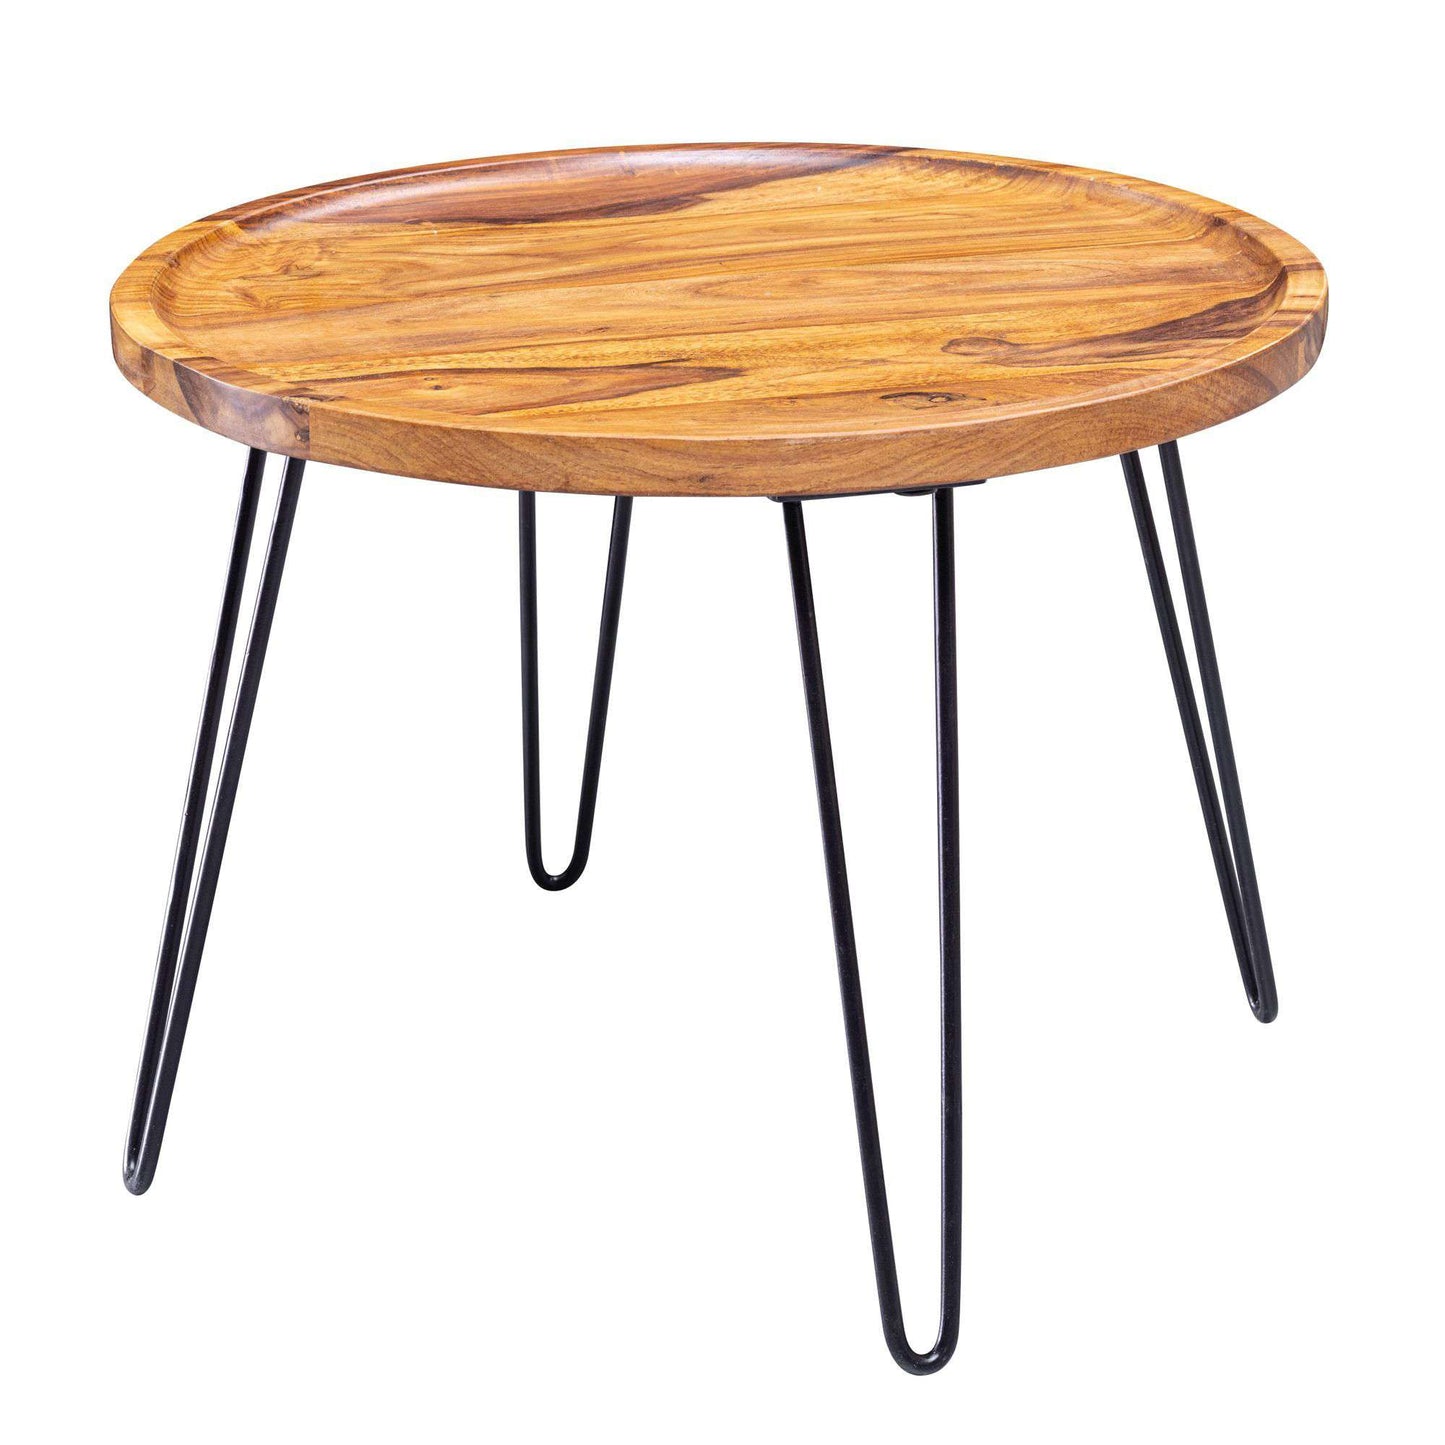 Table basse industrielle de Nancy - Bois de Sesham - Table basse - Table d'appoint - Tables basses - 60 x 43 x 60